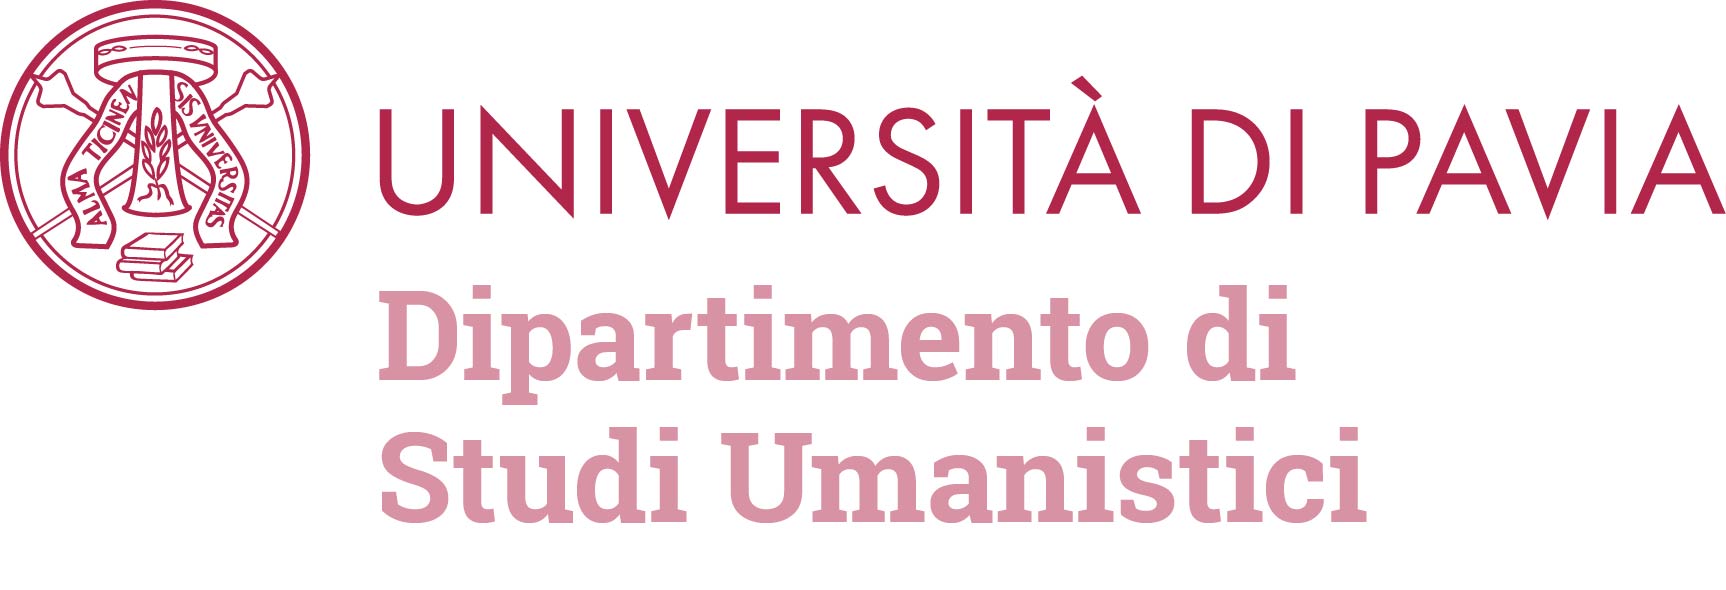  Università degli Studi di Pavia, Dipartimento di Studi Umanistici 